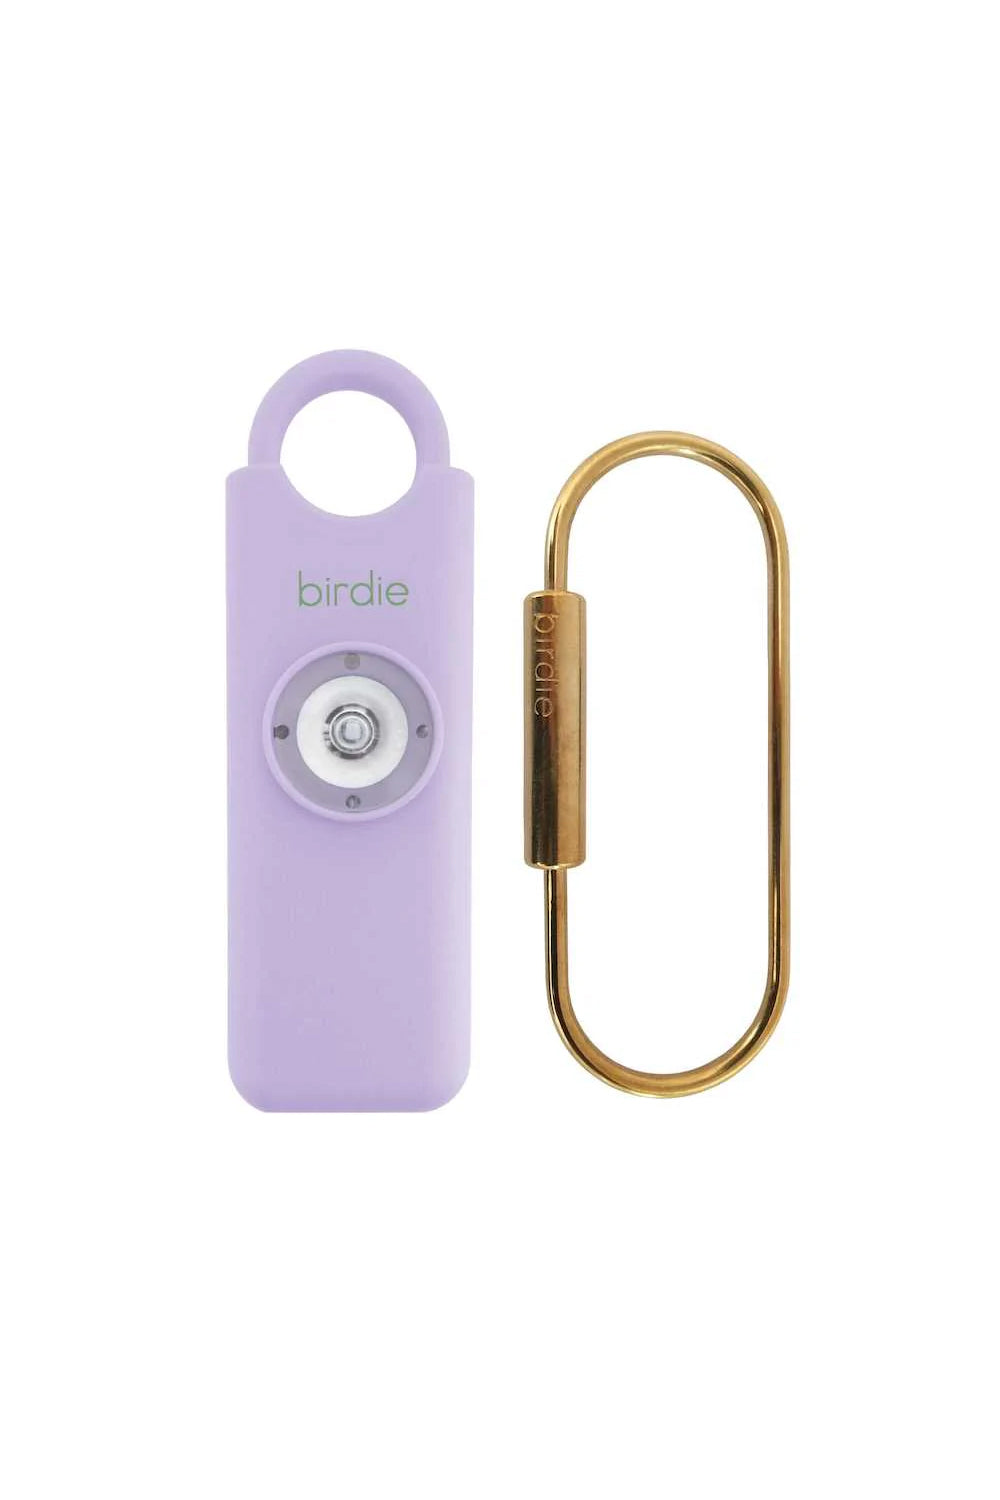 She's Birdie: Alarm Keychain - Lavender | Makk Fashions